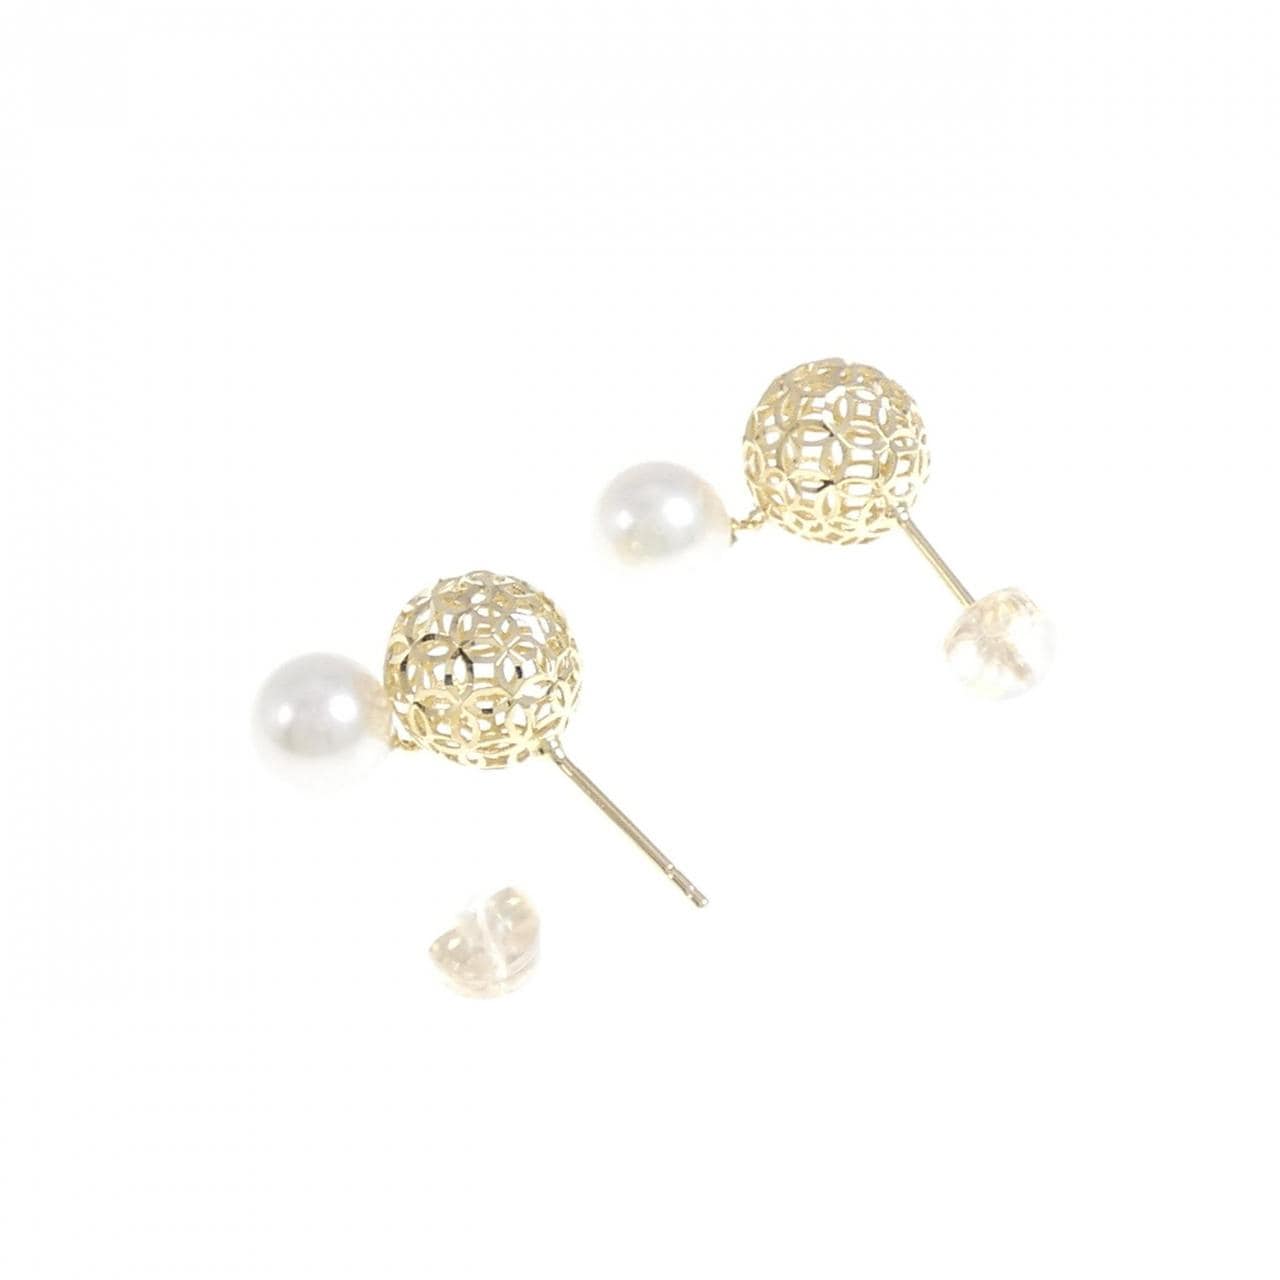 K18YG Akoya pearl earrings 7.1mm